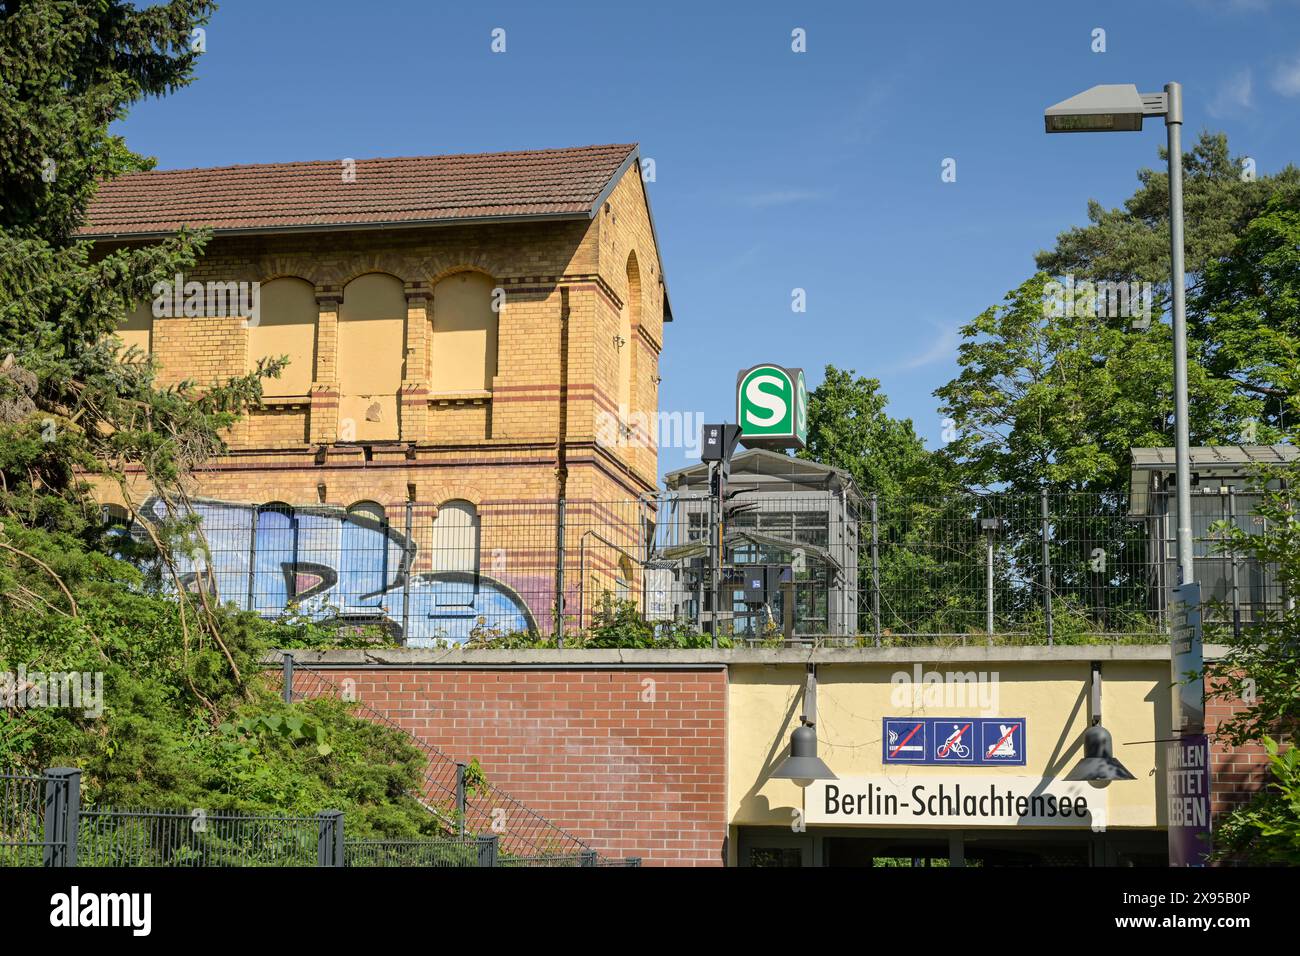 Schlachtensee S-Bahn station, Zehlendorf, Steglitz-Zehlendorf district, Berlin, Germany, S-Bahnhof Schlachtensee, Zehlendorf, Bezirk Steglitz-Zehlendo Stock Photo